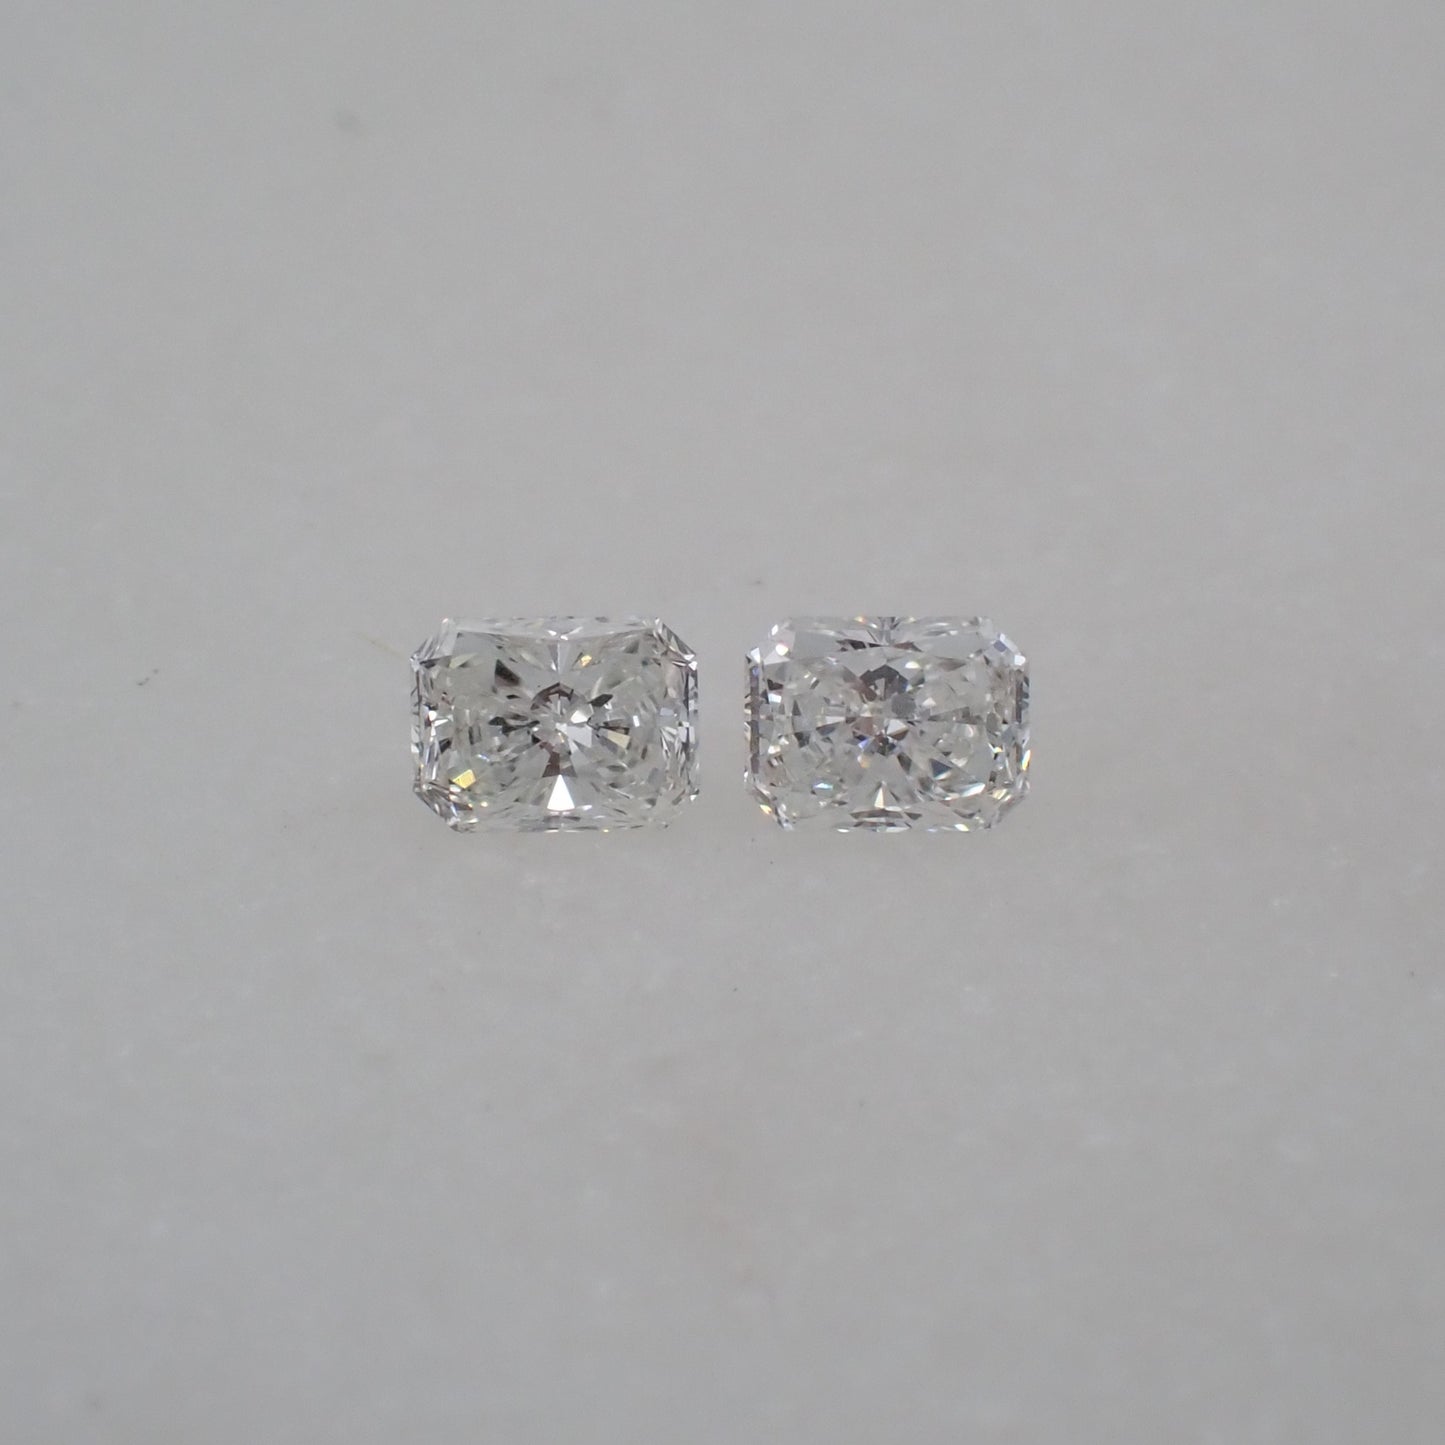 Antique Diamond Pair - Radiant Cut 0.18ct